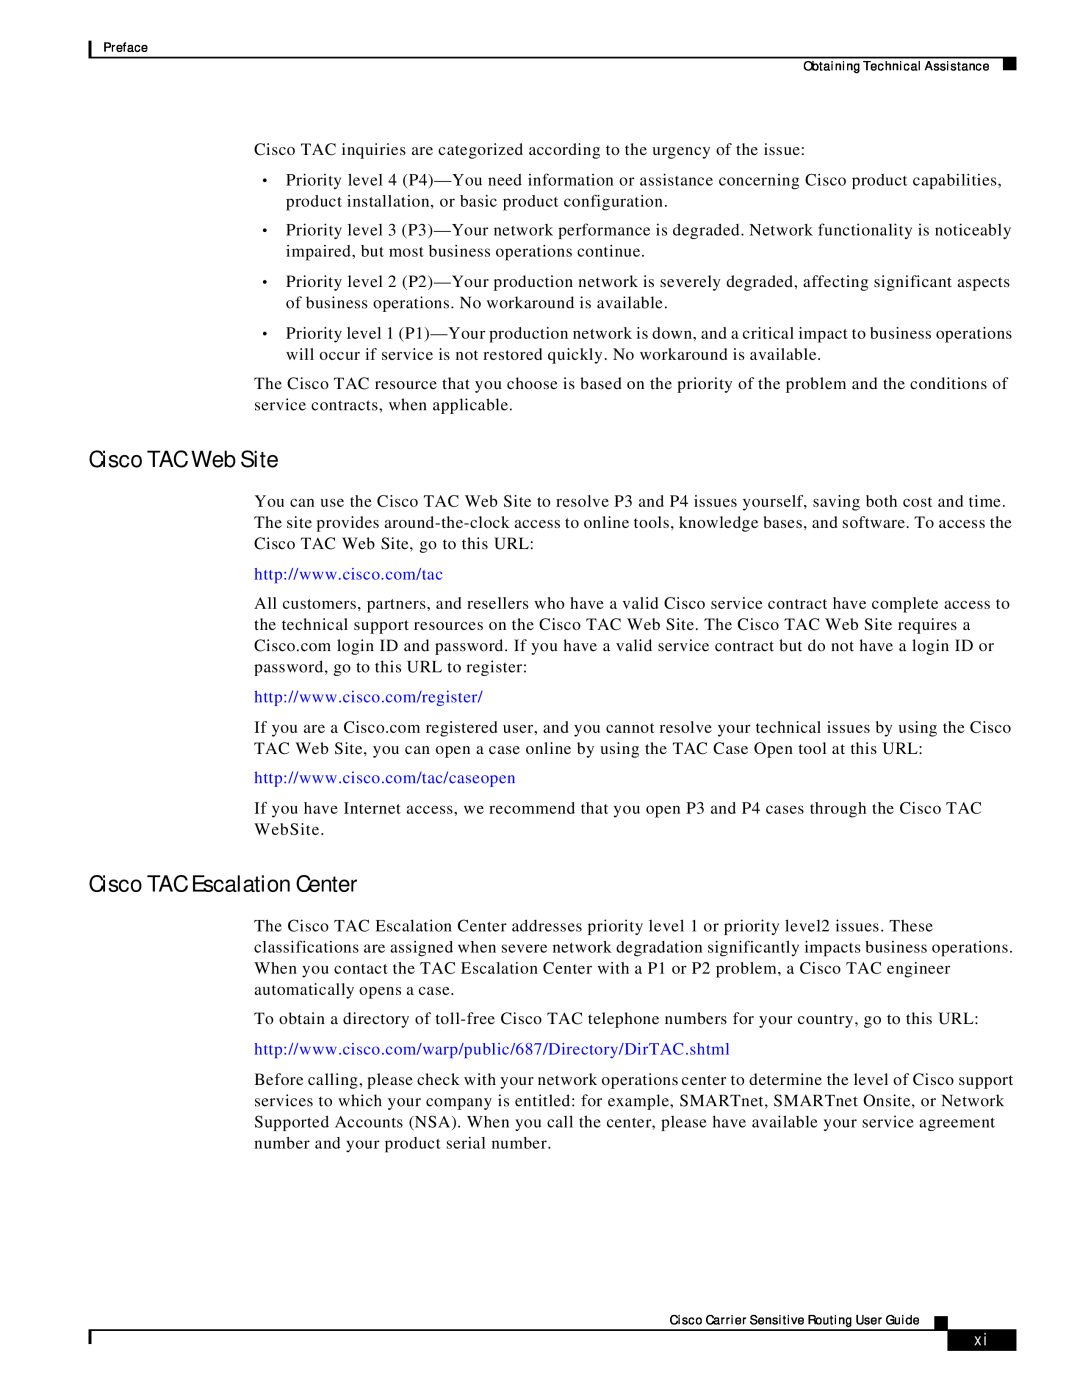 Cisco Systems Version 1.1 manual Cisco TAC Web Site, Cisco TAC Escalation Center 